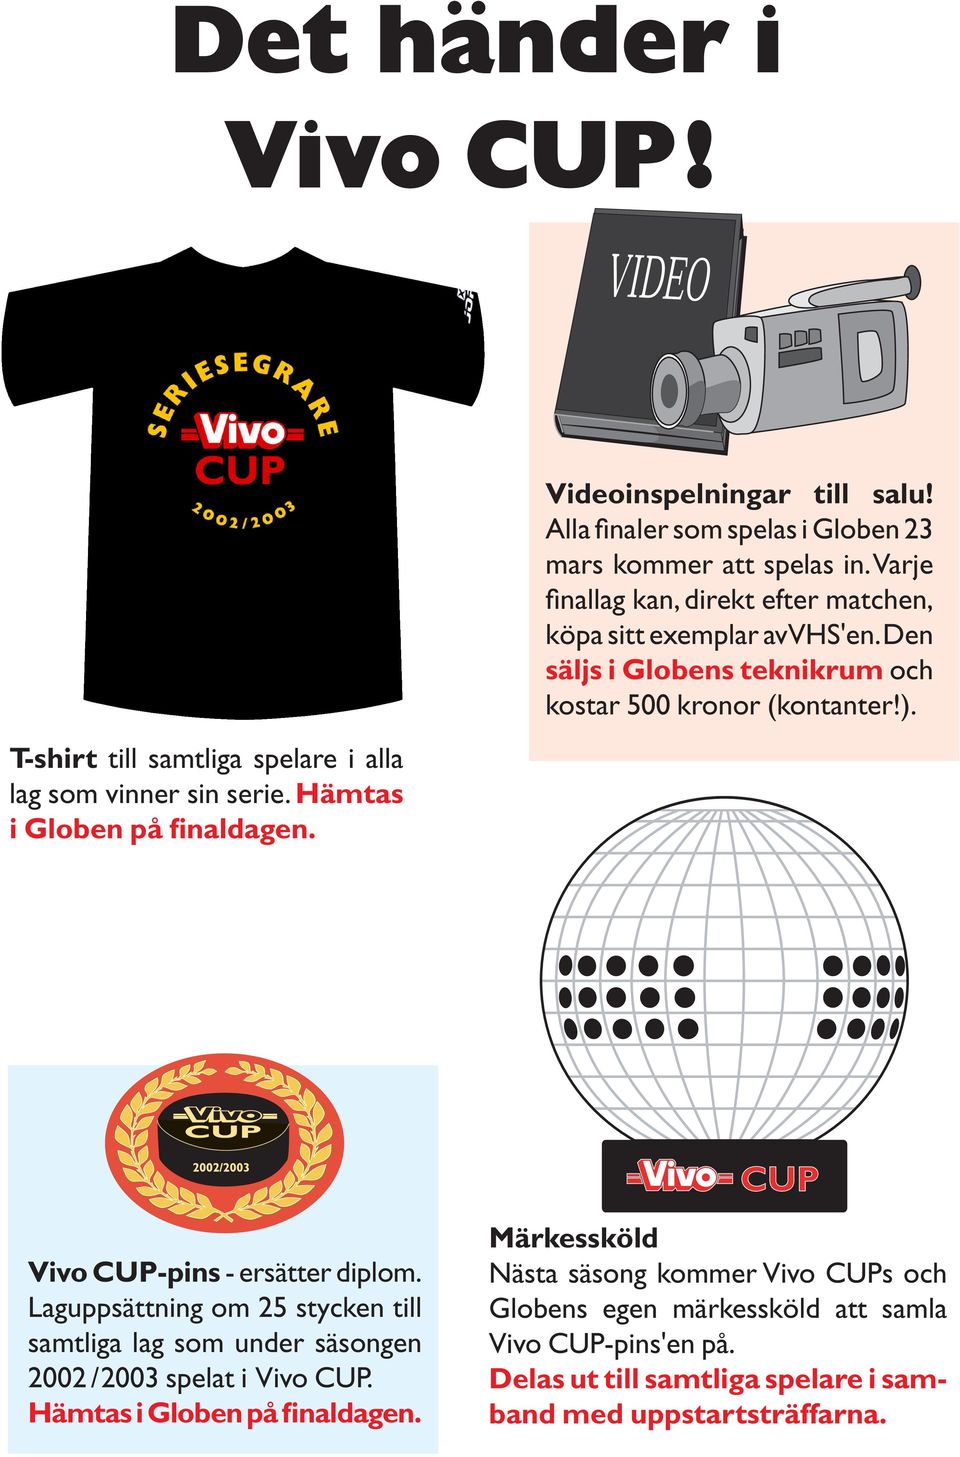 Den säljs i Globens teknikrum och kostar 500 kronor (kontanter!). Vivo CUP-pins - ersätter diplom.